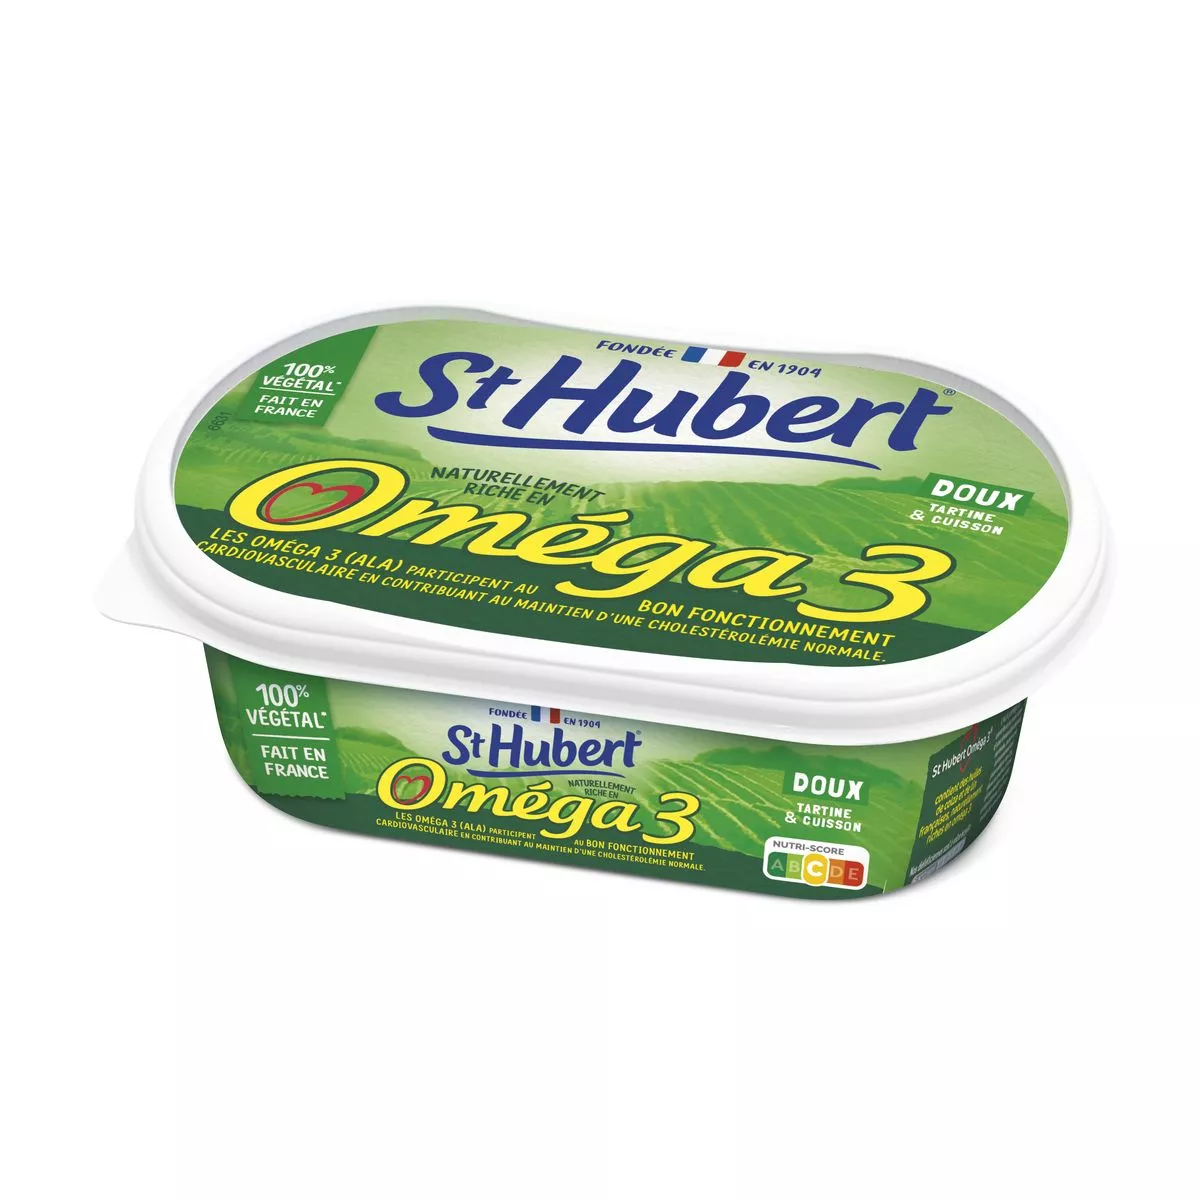 St Hubert Margarine Omega 3 unsalted 255g